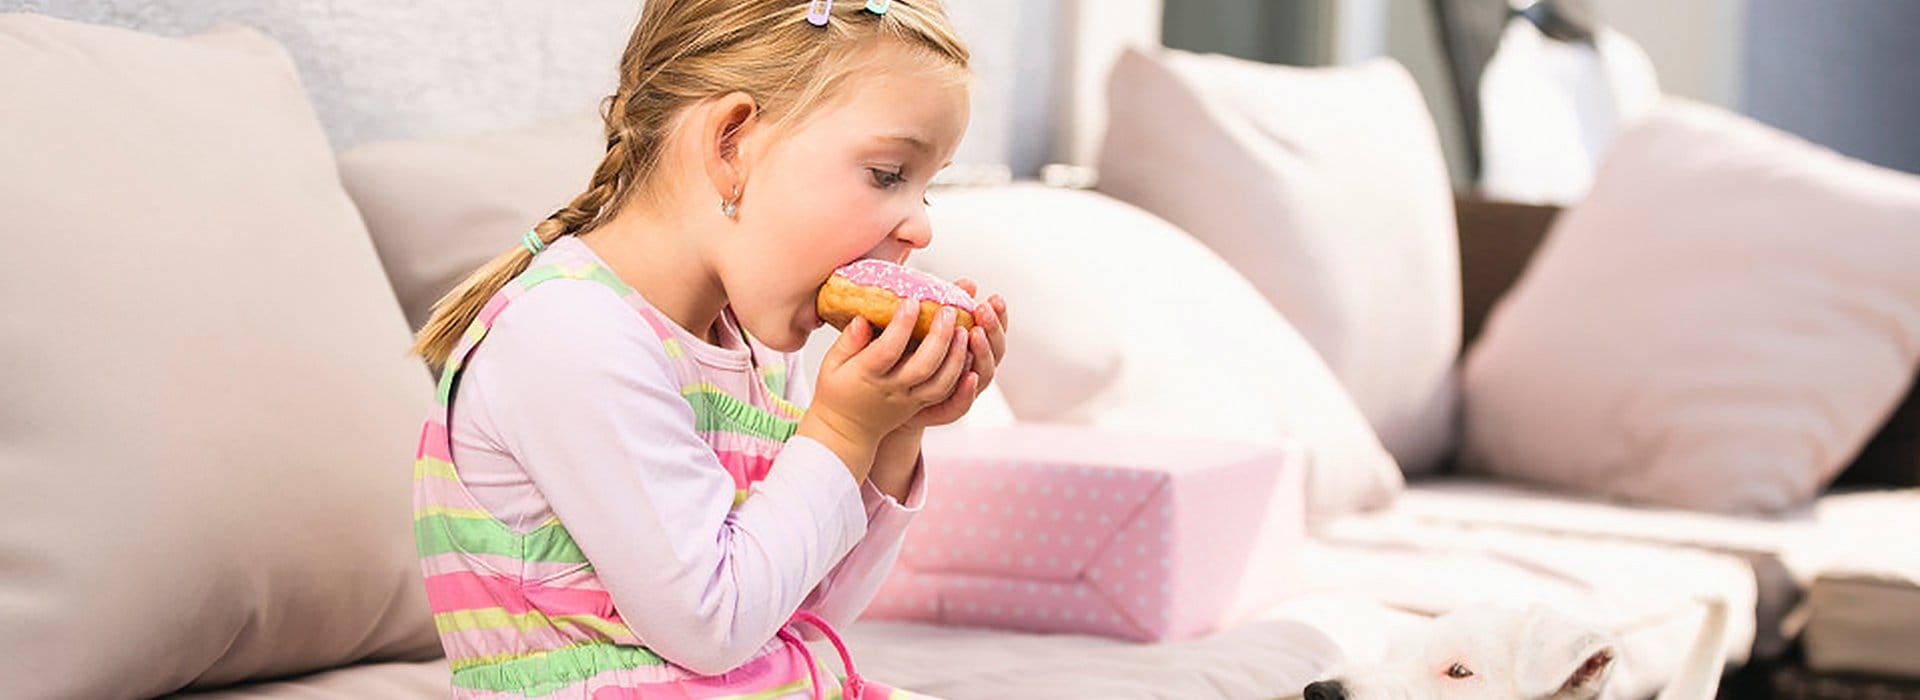 Kind auf Sofa beim Essen eines Donuts